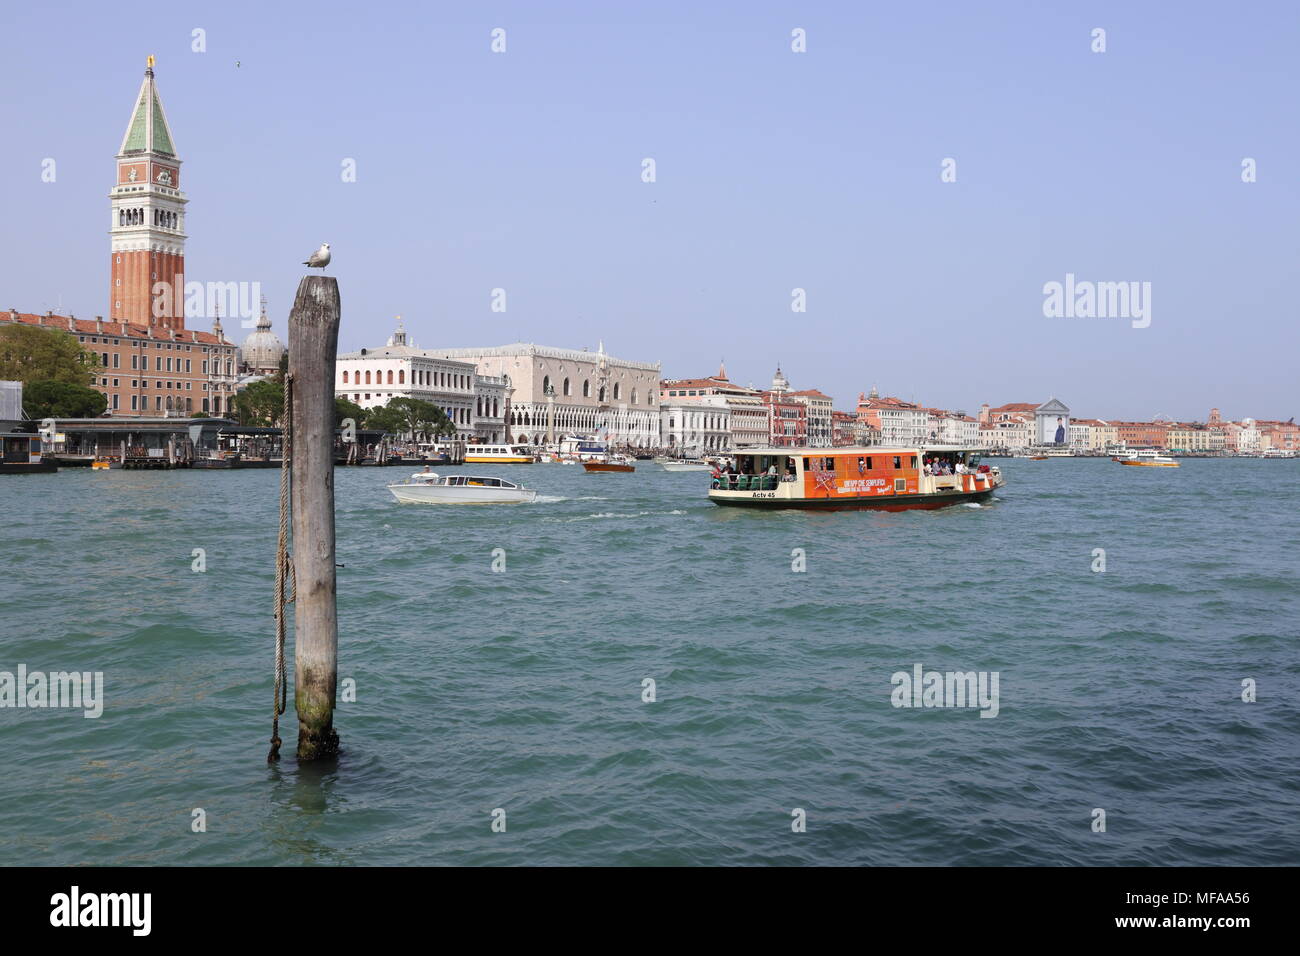 La città di Venezia con il Palazzo del Doge e il Campanile di San Marco, giornata soleggiata, barca, Italia, Europa Foto Stock